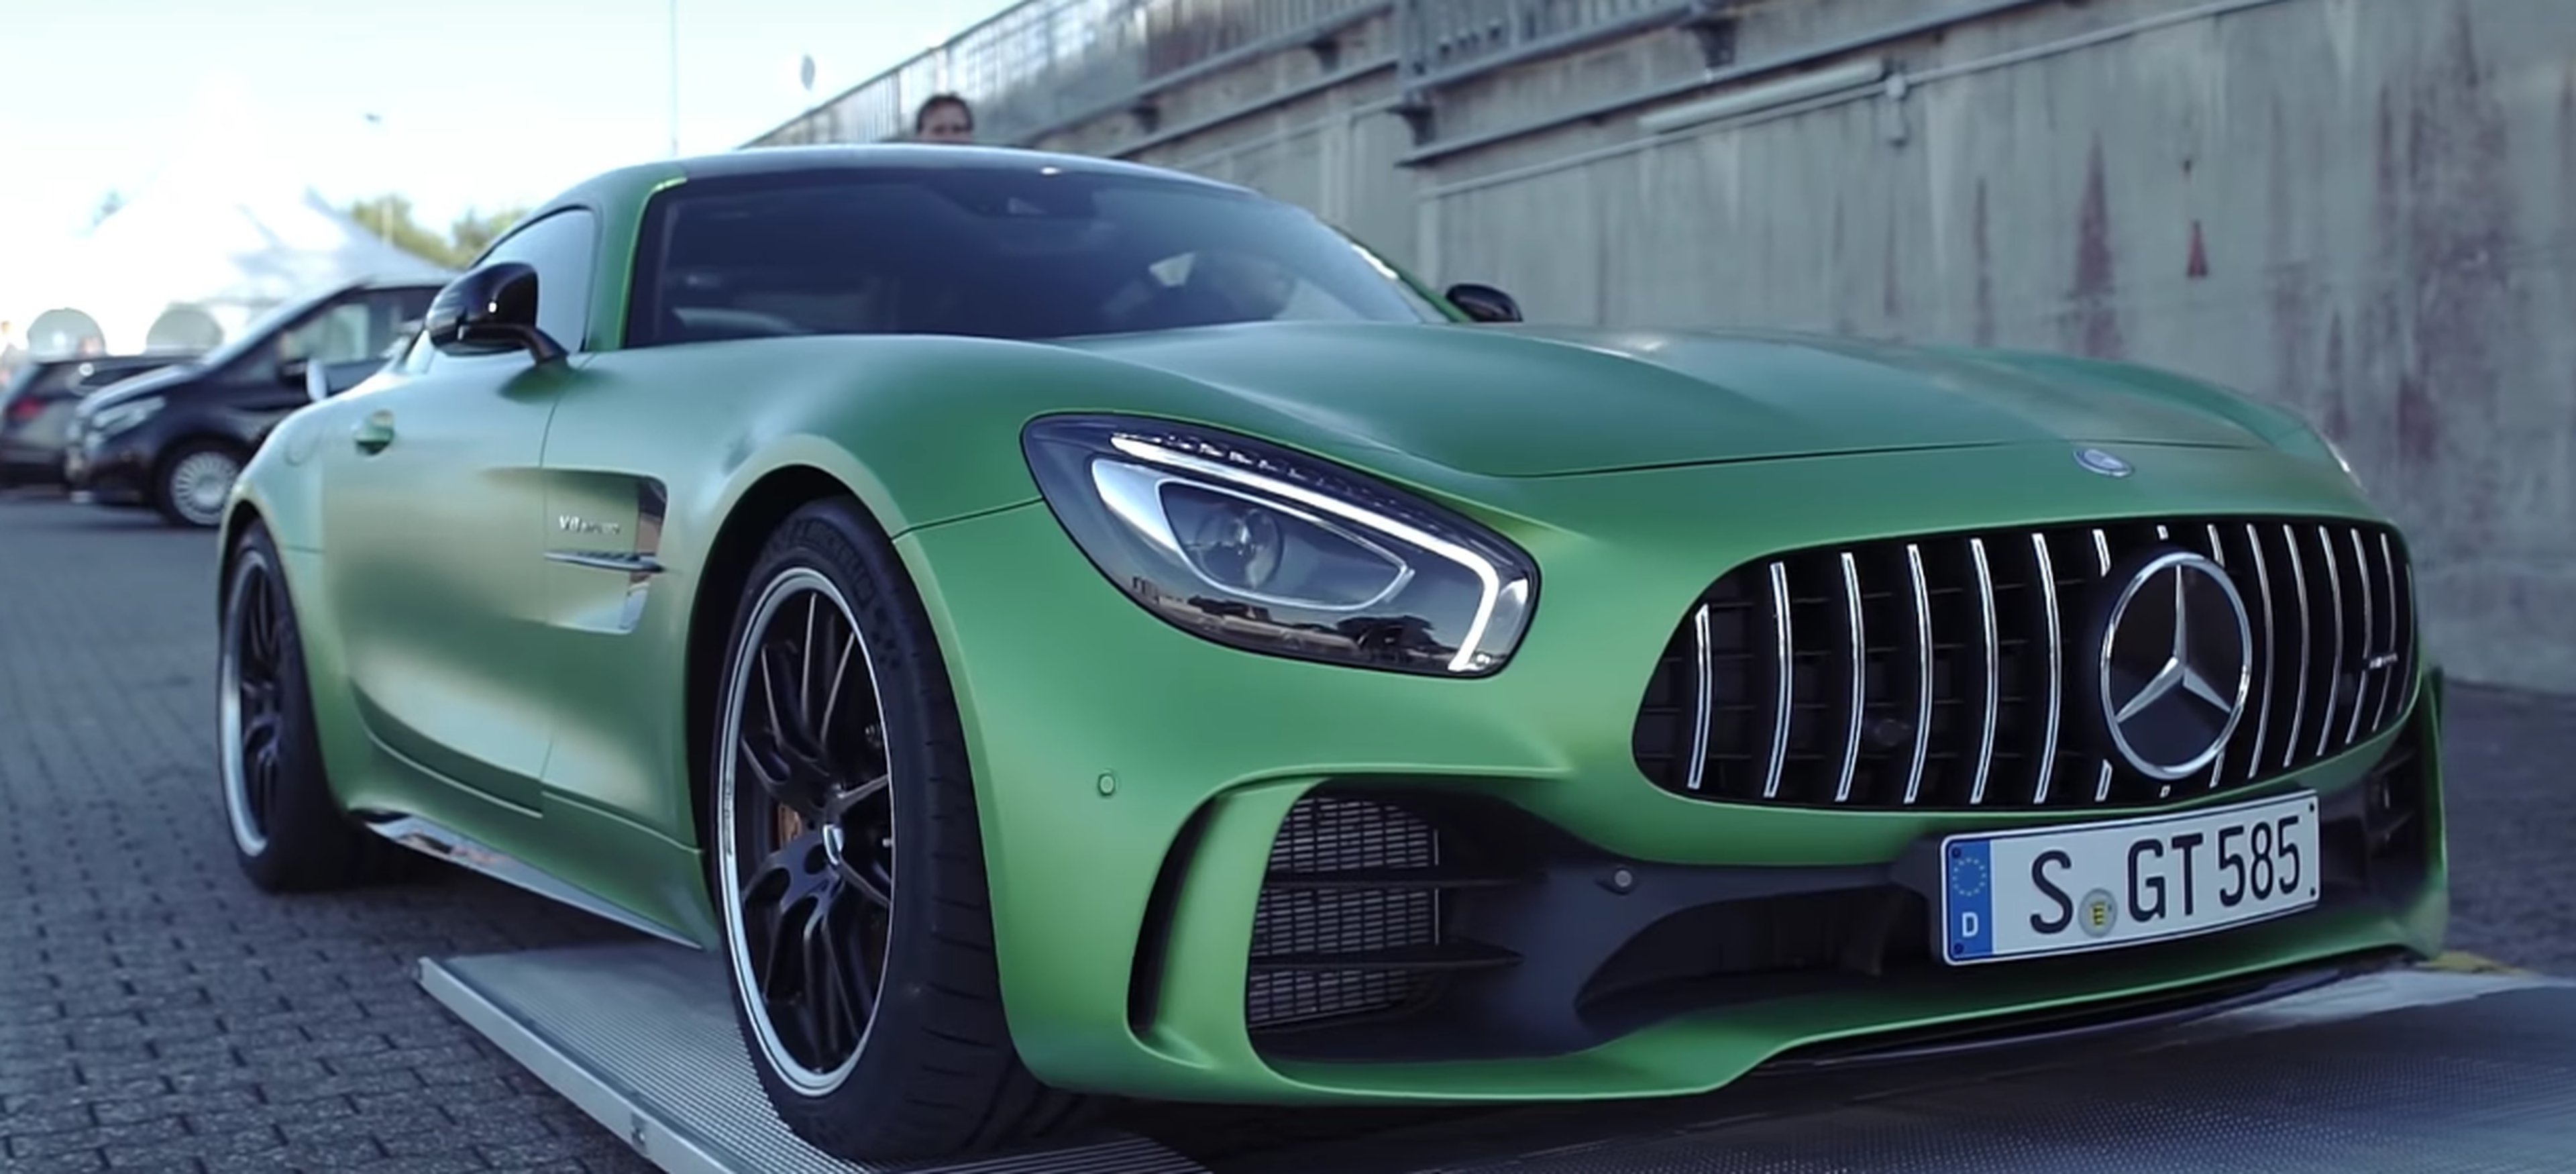 VÍDEO: Onboard en el Mercedes-AMG GT R, ¡qué carrocería más guapa!